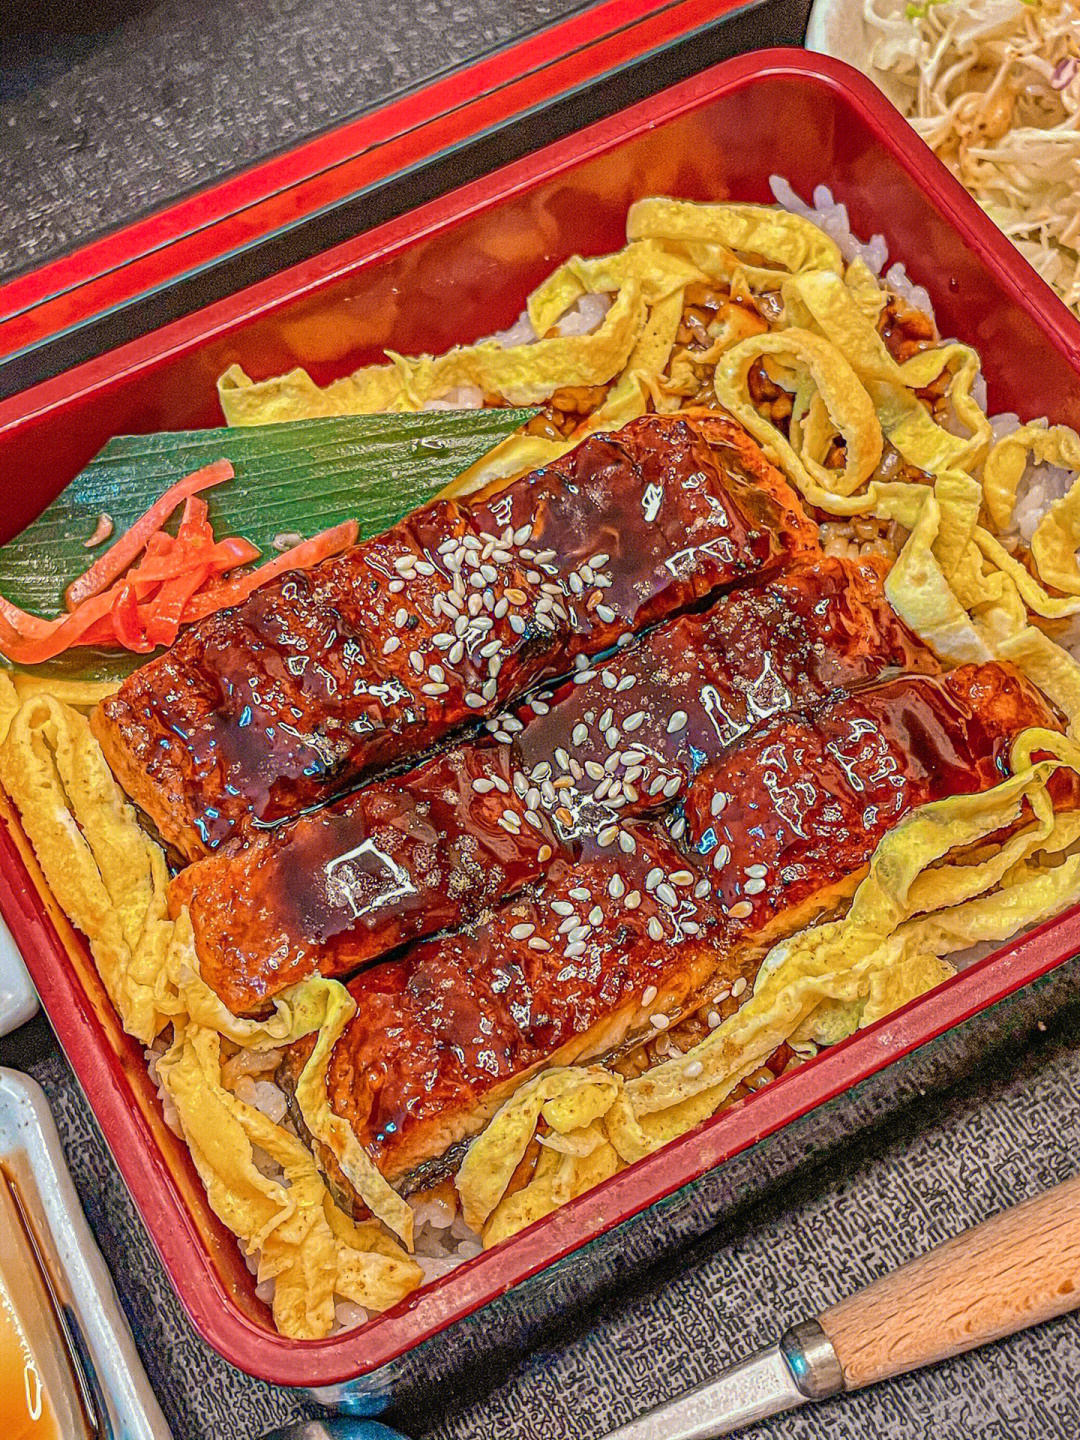 套餐里还带味增汤和蔬菜沙拉,日式冷豆腐和韩式辣